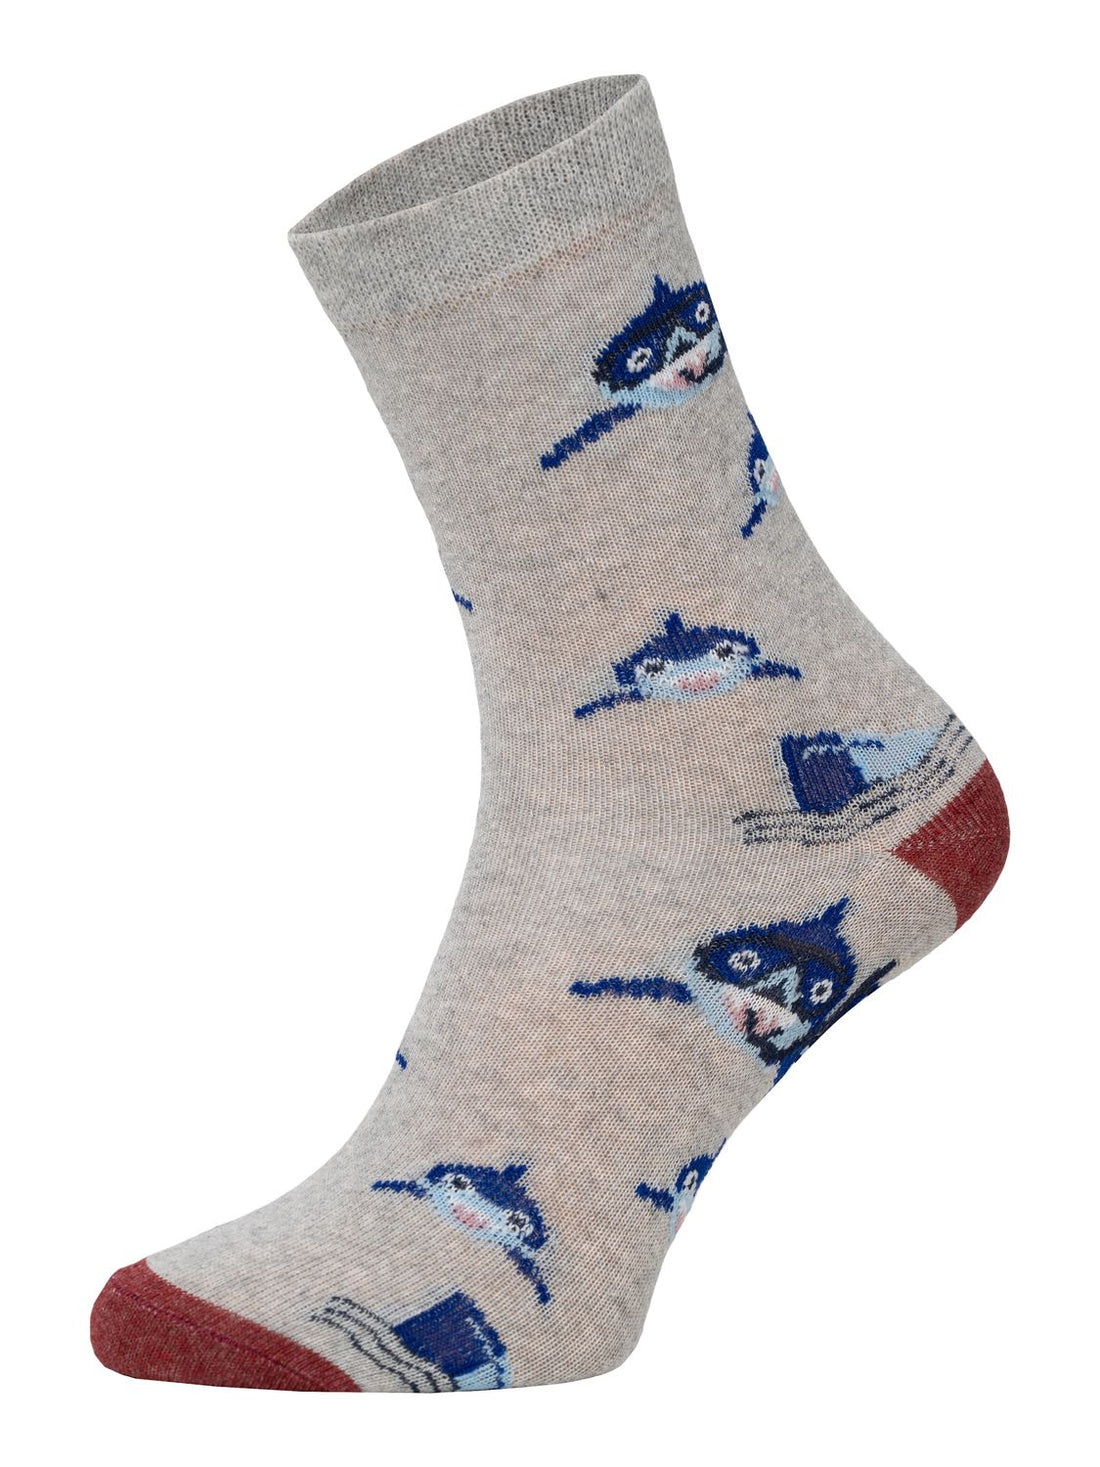 ChiliLifestyle Socken Hai für Kinder